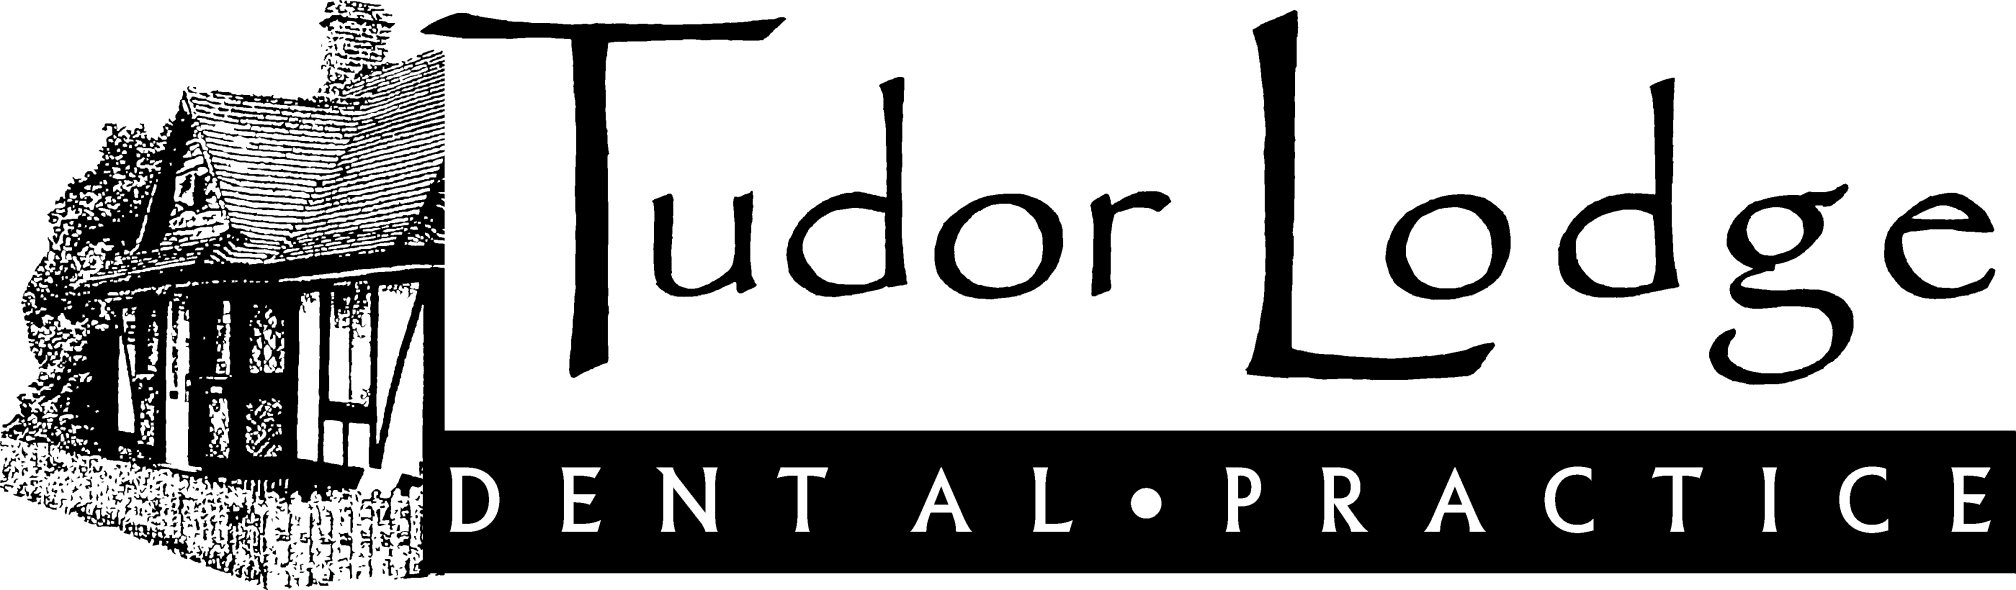 Images Tudor Lodge Dental Practice